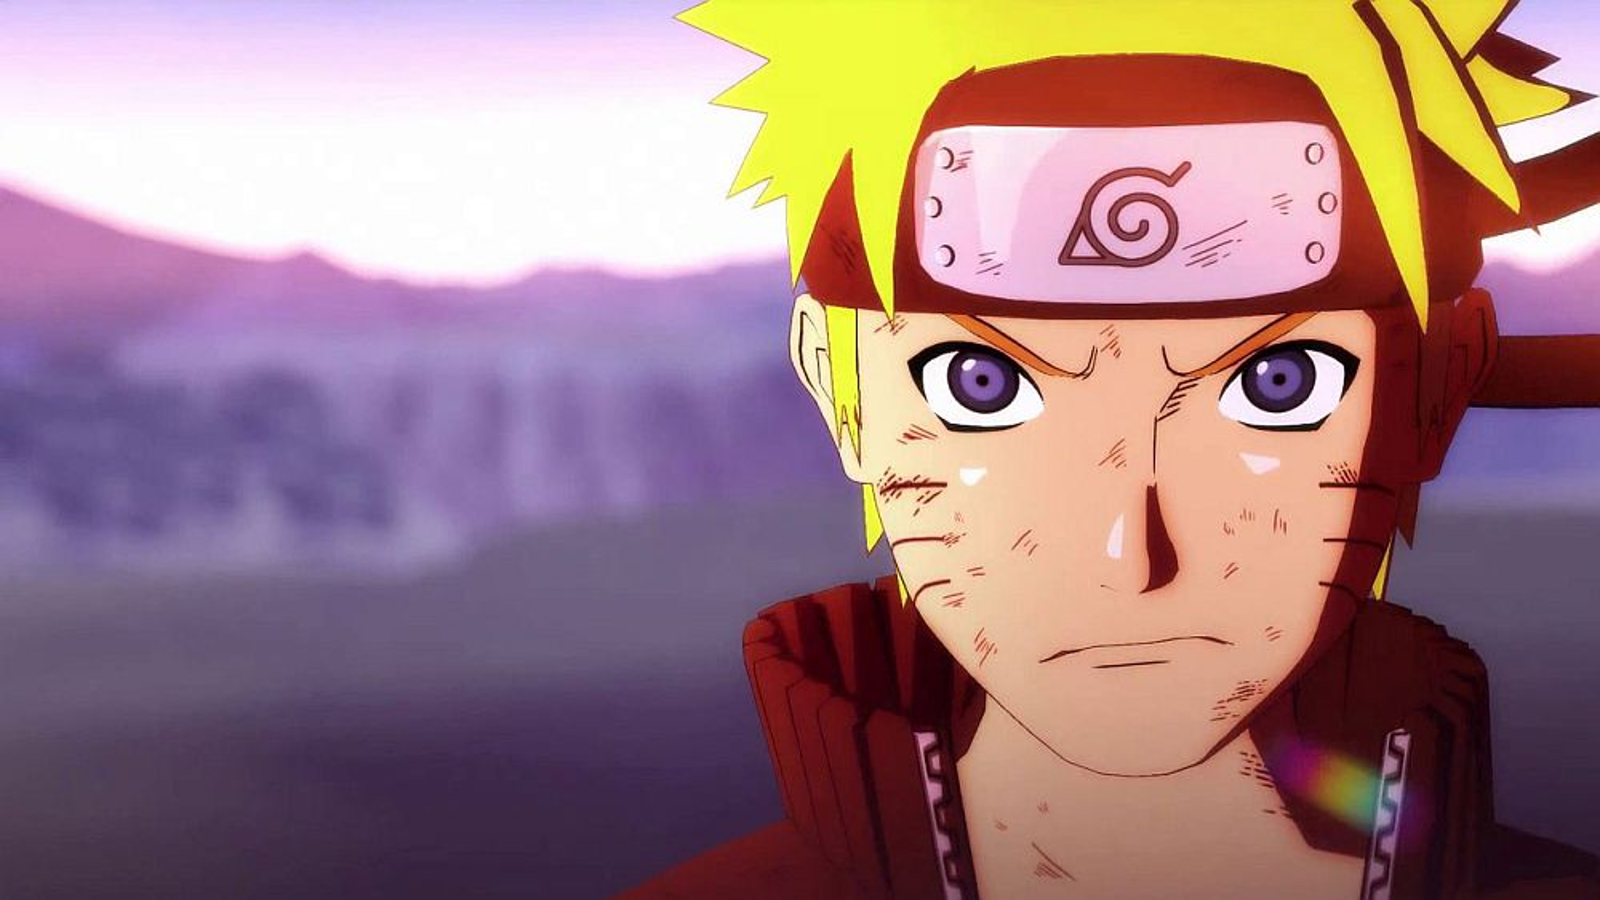 NARUTO NOVO ANIME DATA DE LANÇAMENTO - [Naruto 4 novos episódios] 